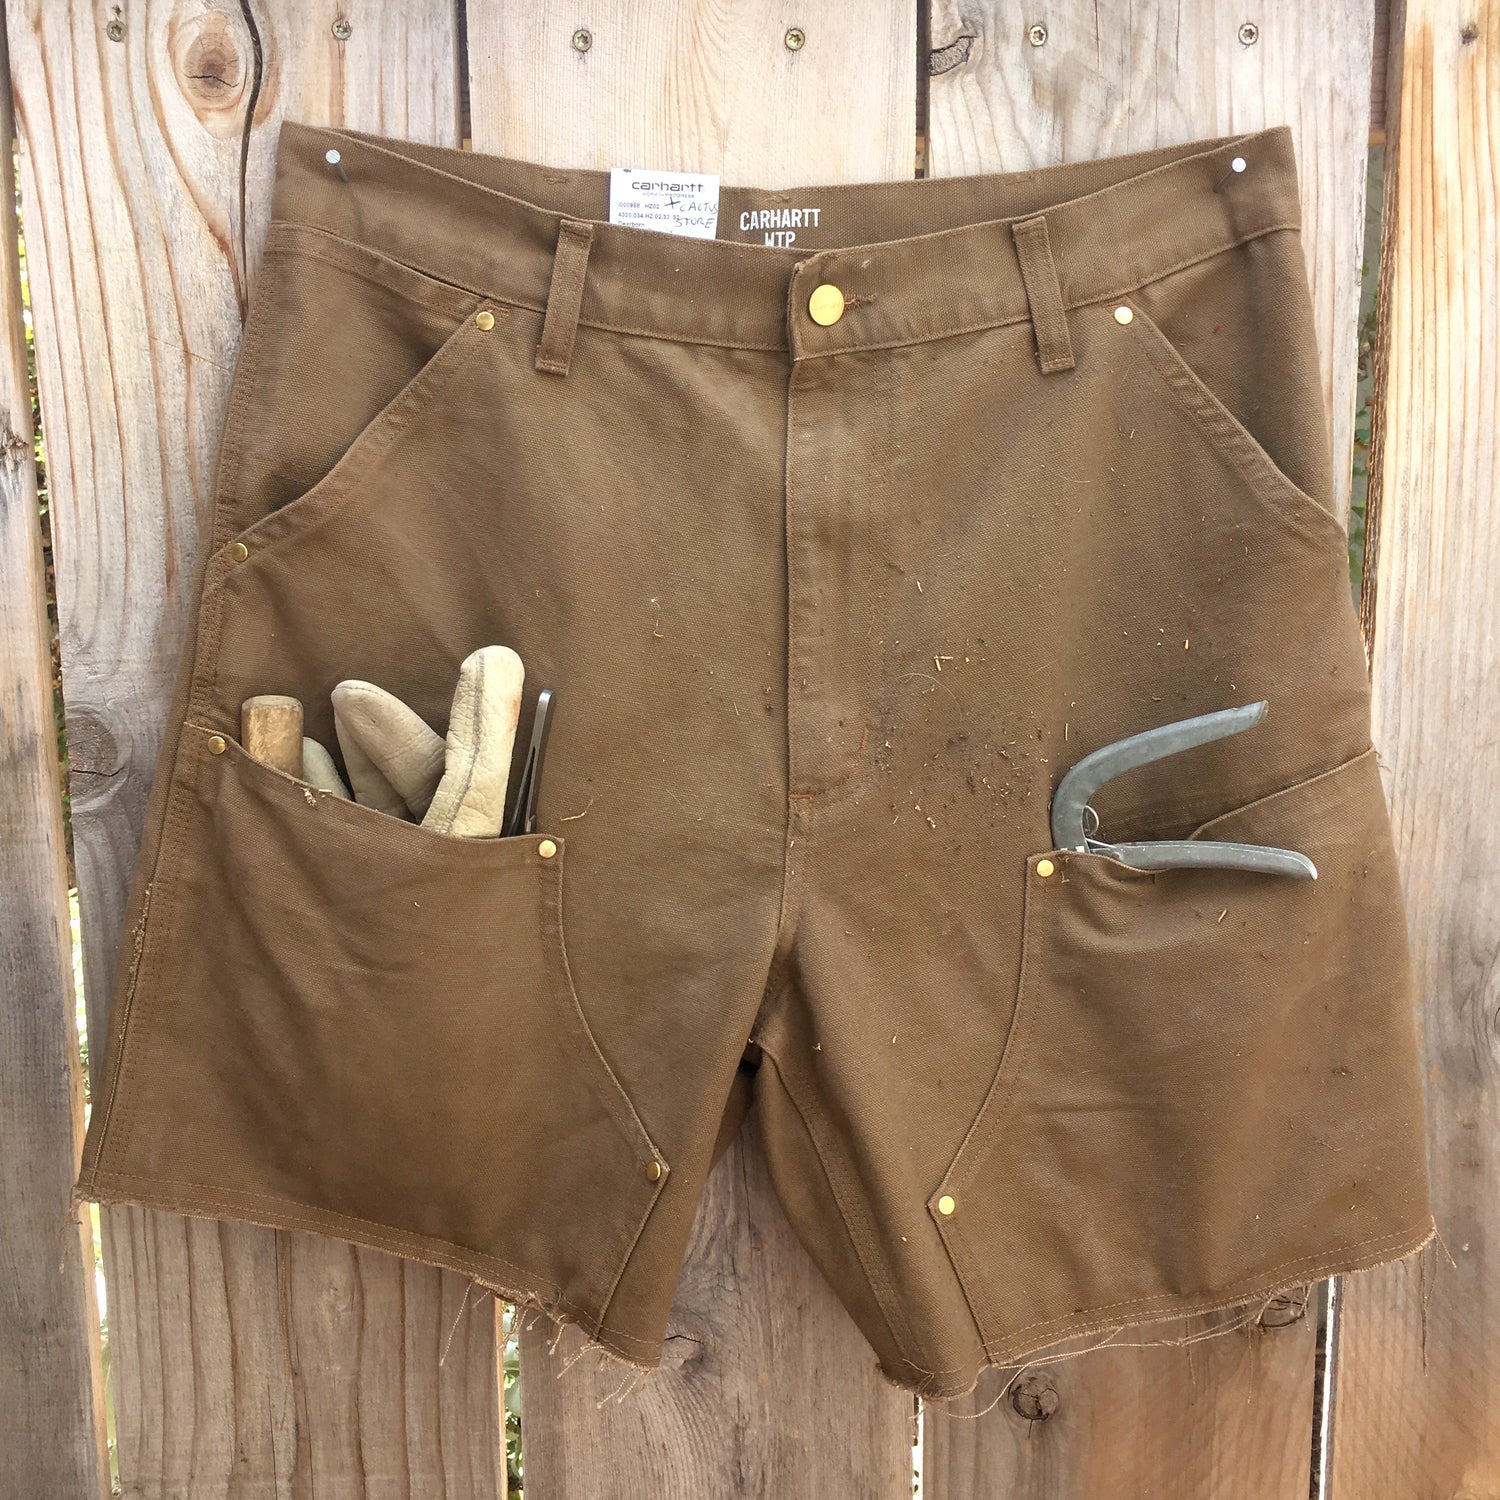 Garden shorts (CHC) - Brown